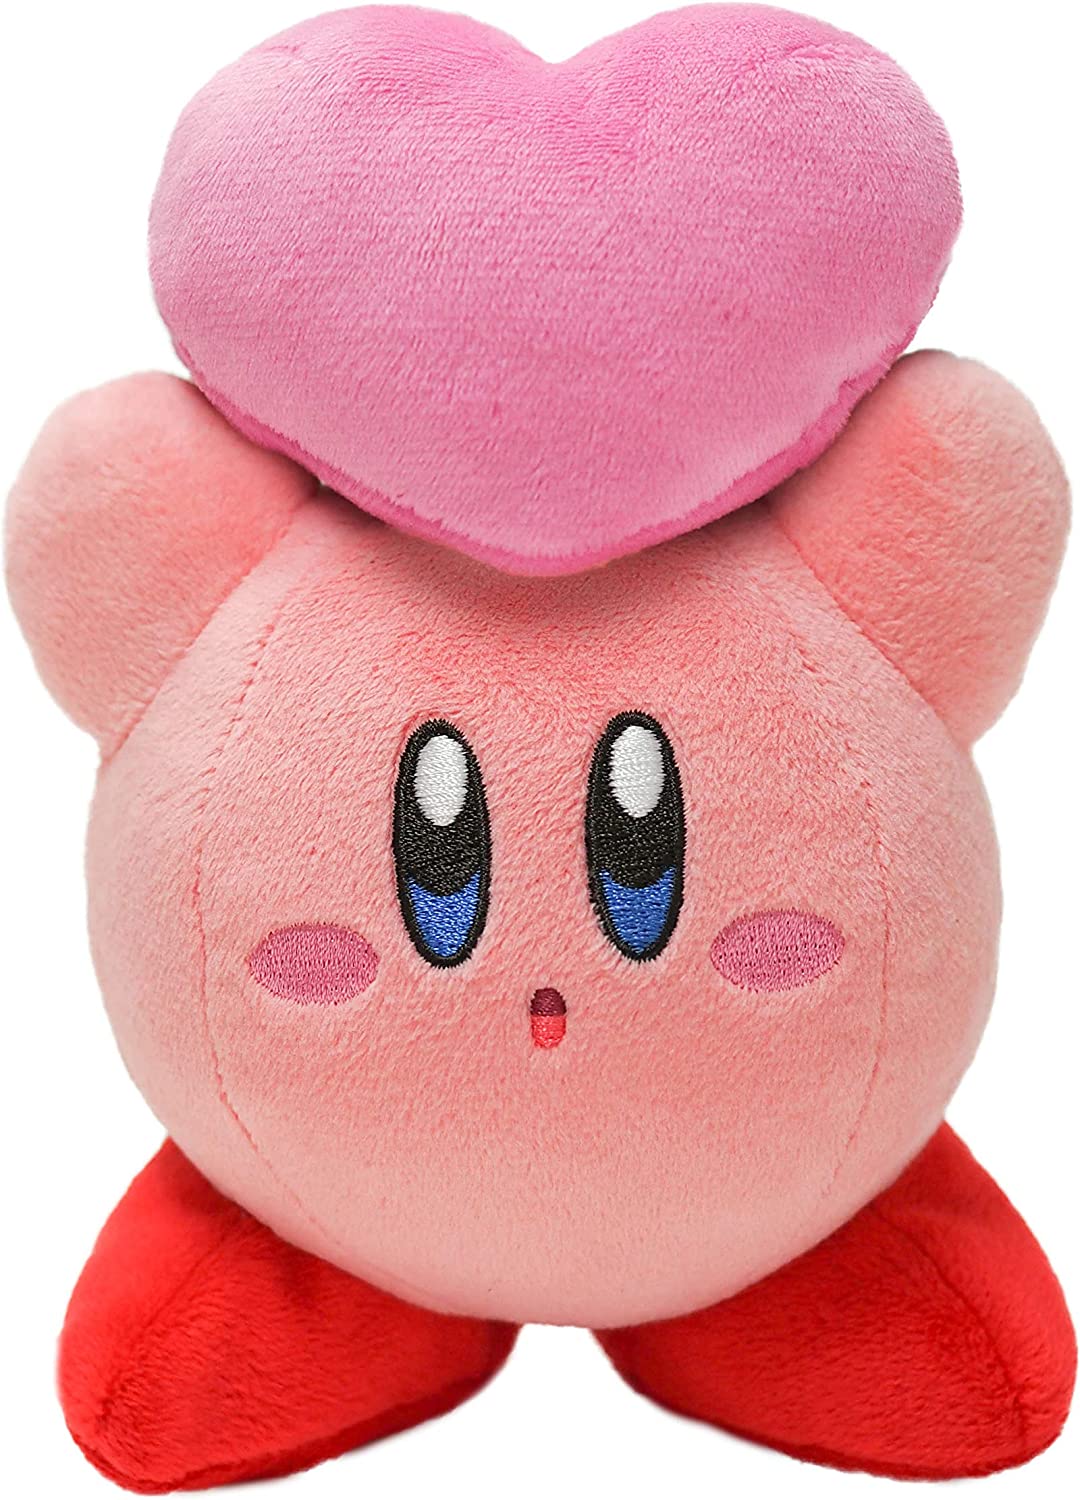 Peluche Kirby original de importación japonesa